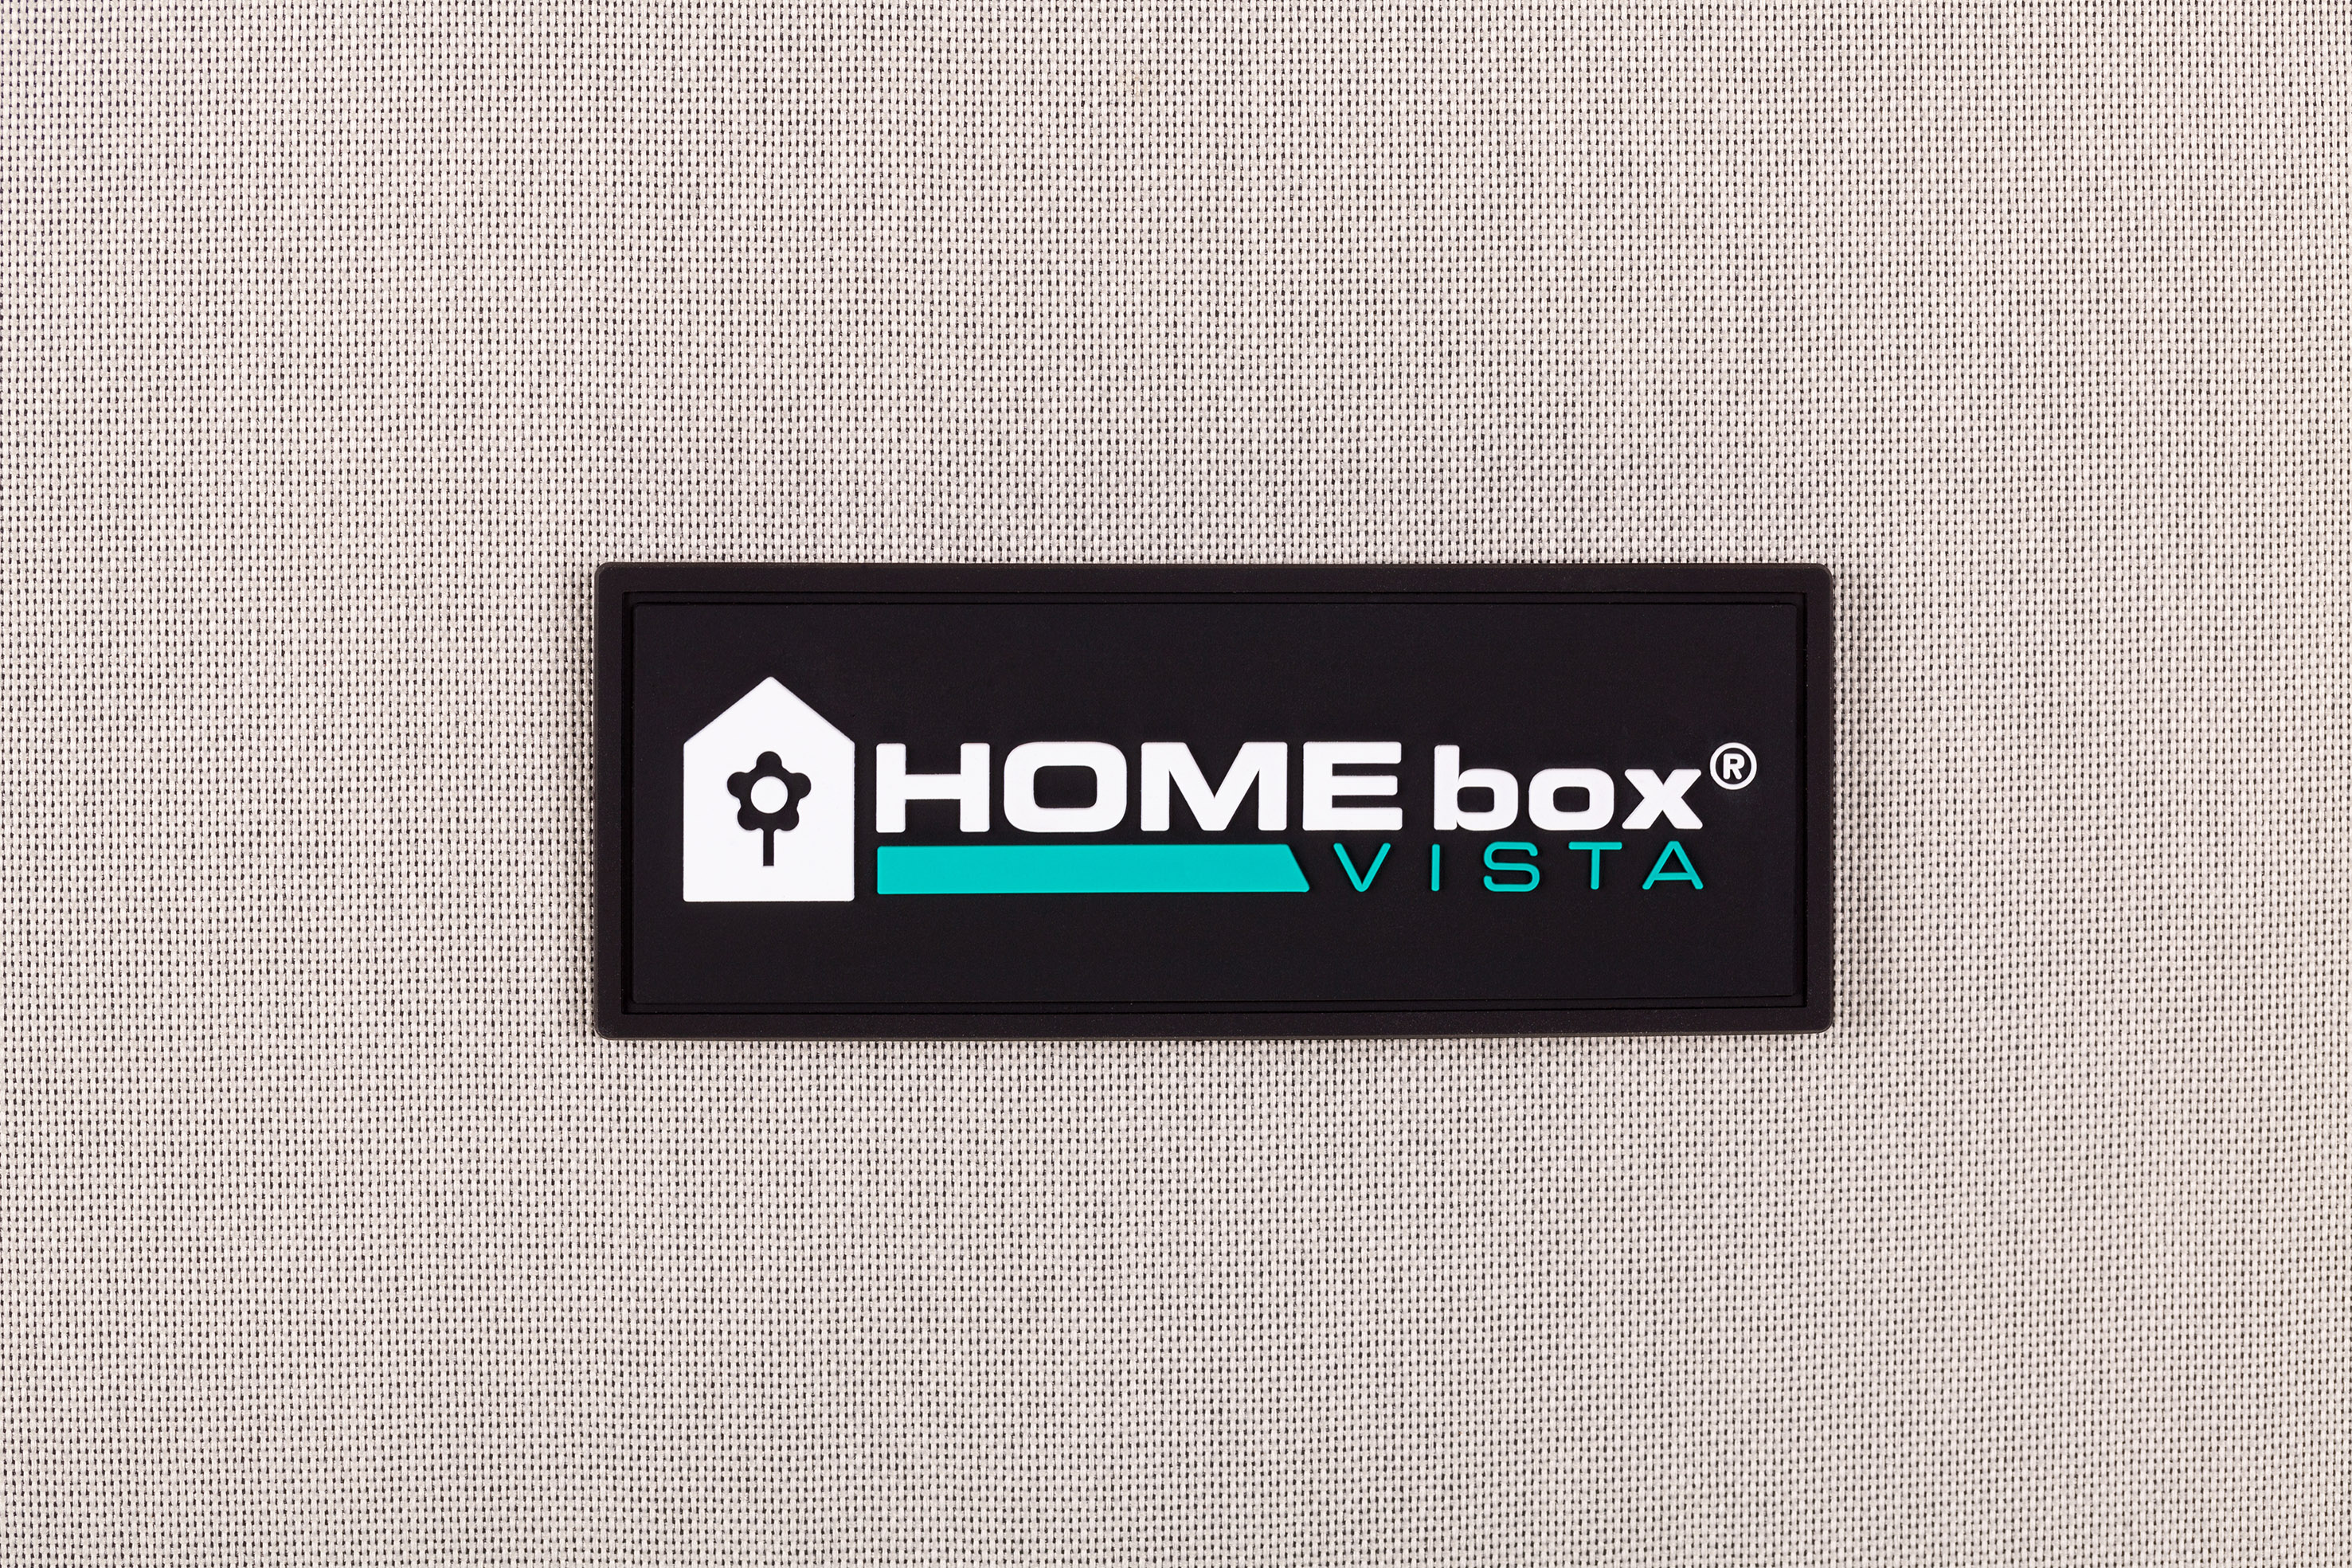 HOMEbox Ambient Q100 PAR+ 1x1x2m 1qm